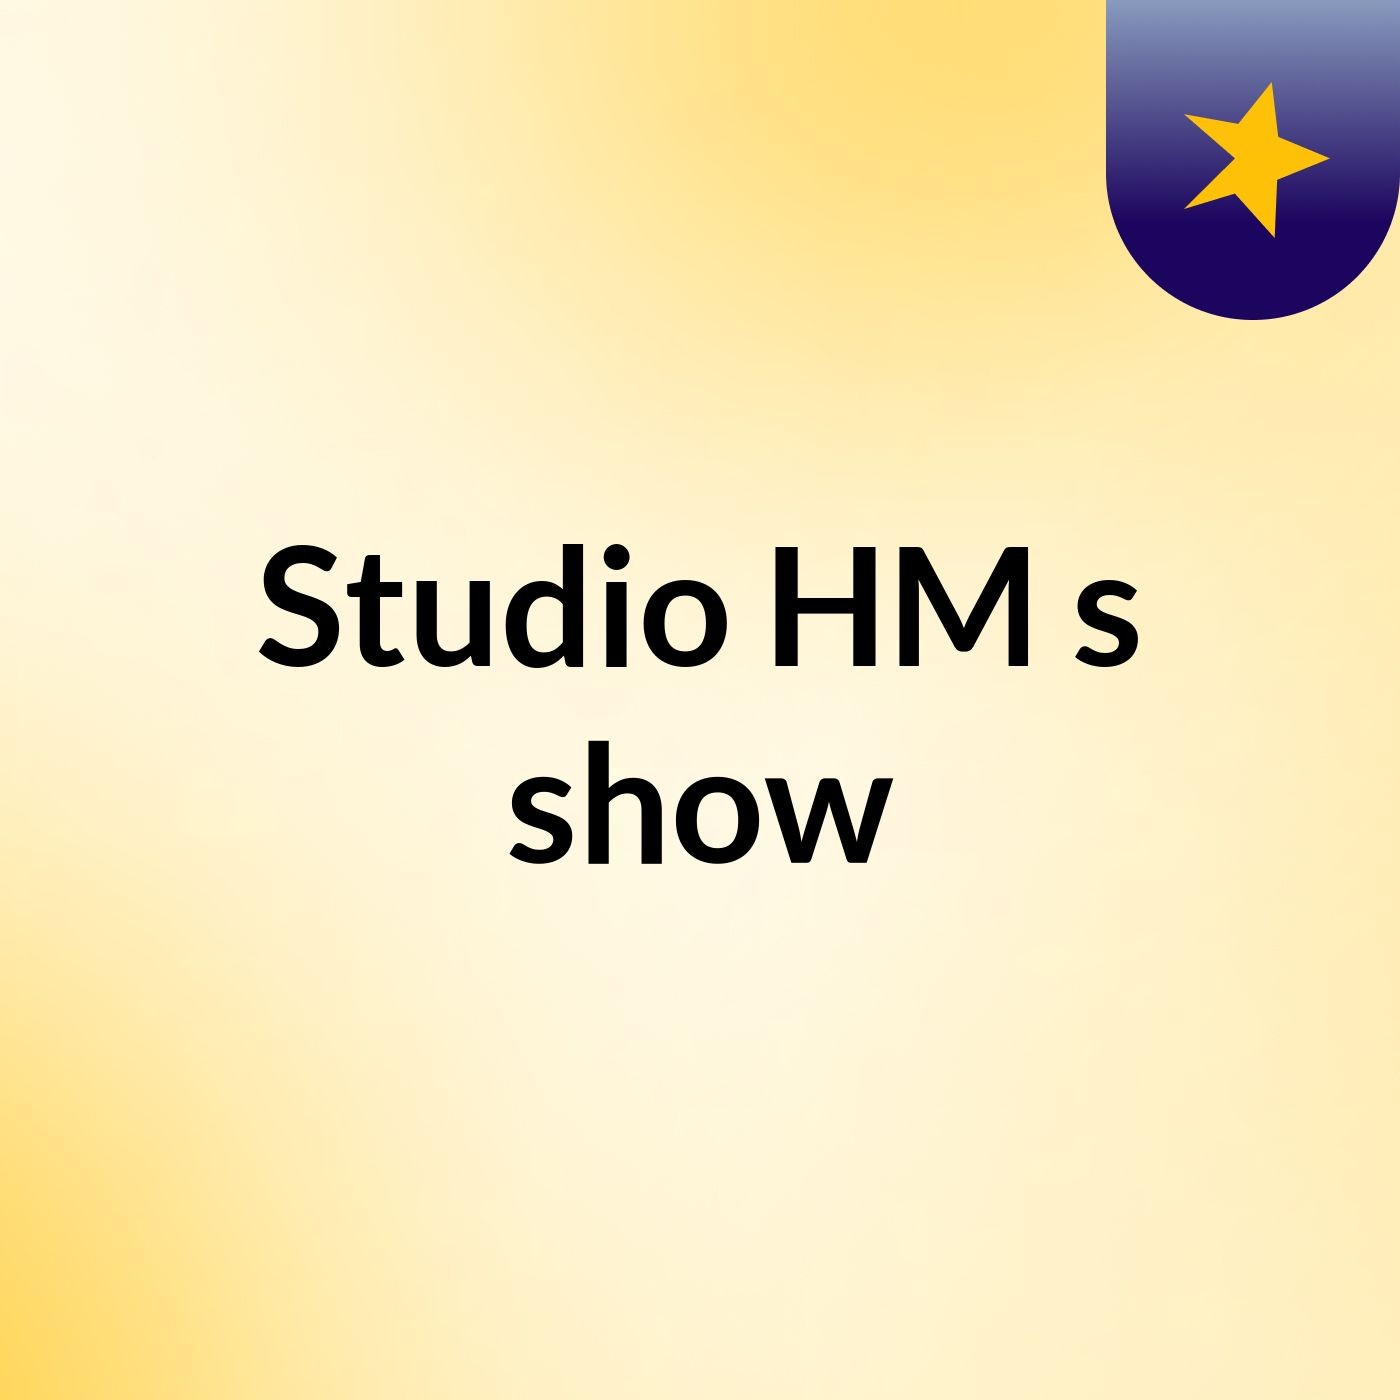 Studio HM's show